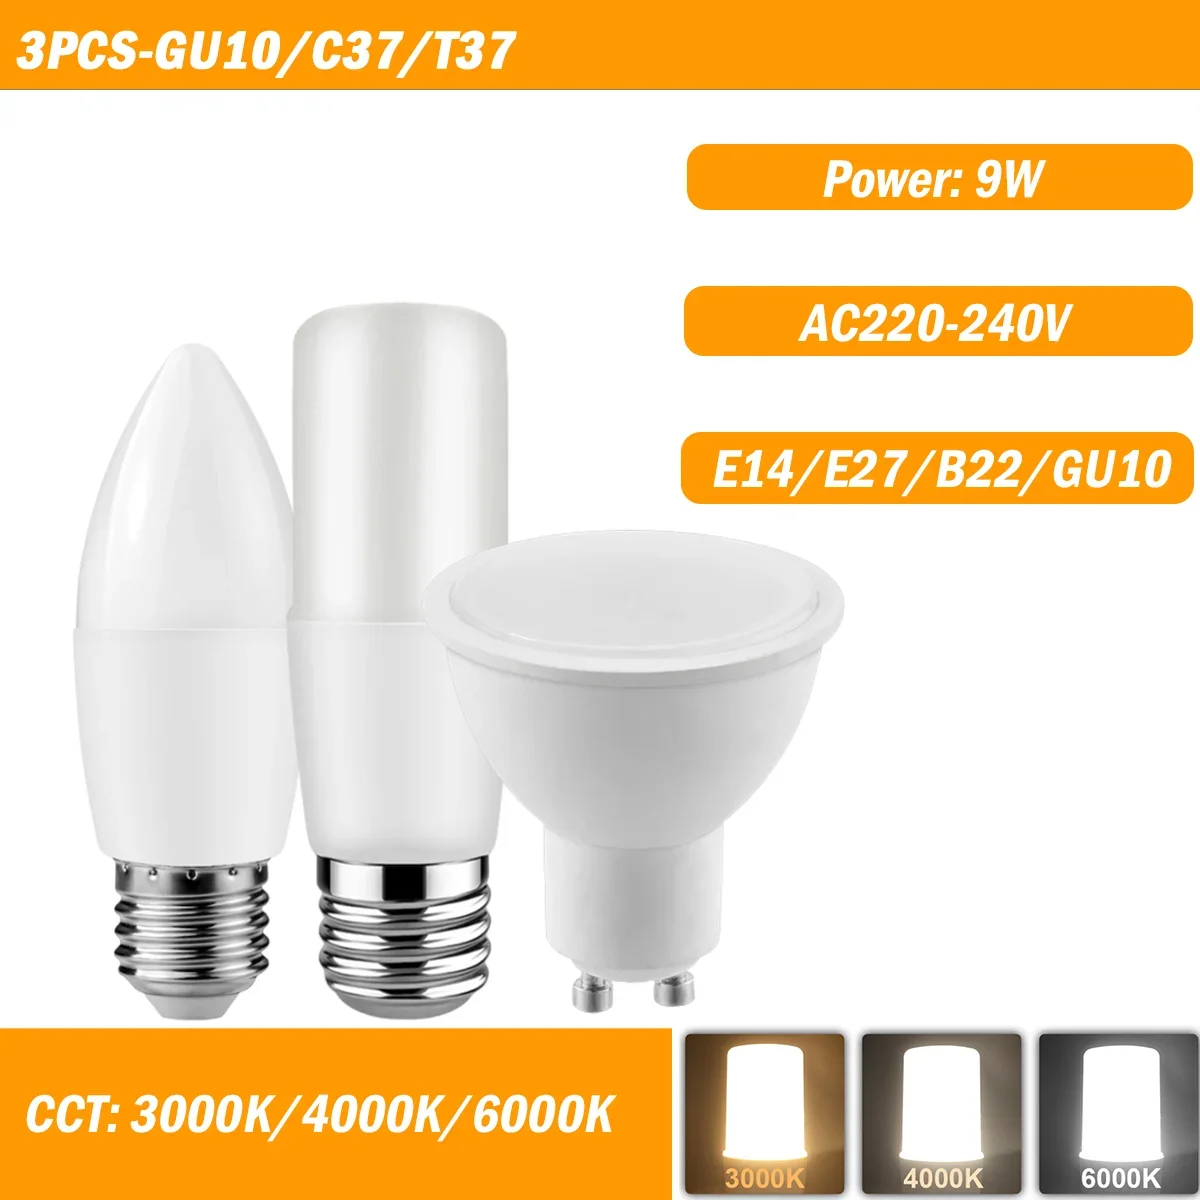 

3PCS LED Light C37/T37/GU10 9W AC220-240V E14/E27/B22/GU10 High Lumen No Strobe Warm White Light for Indoor Lighting